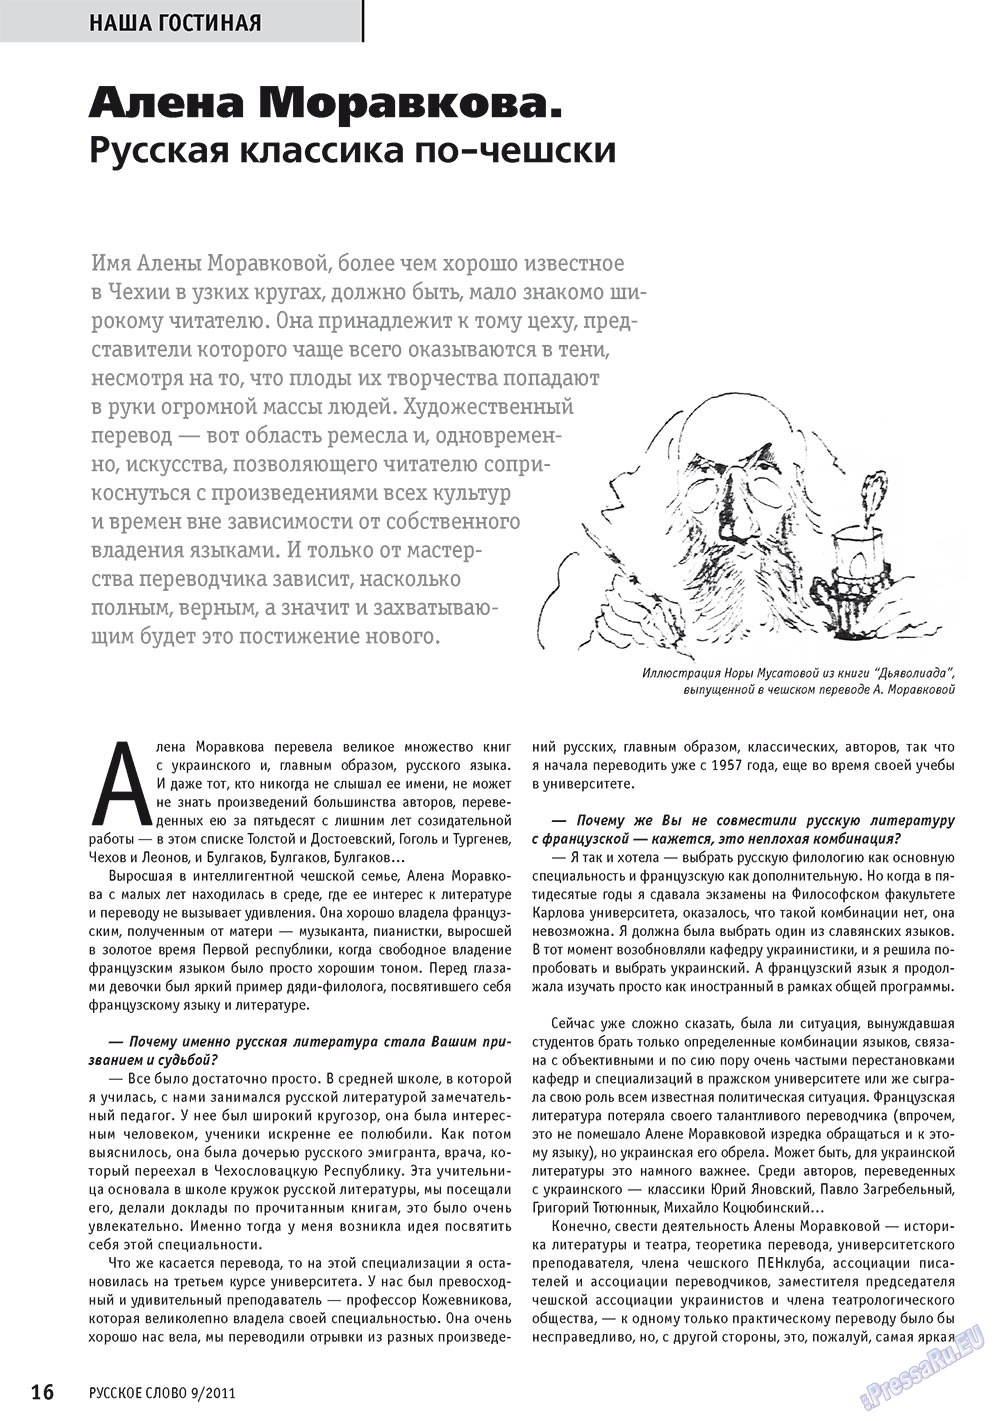 Русское слово, журнал. 2011 №9 стр.18